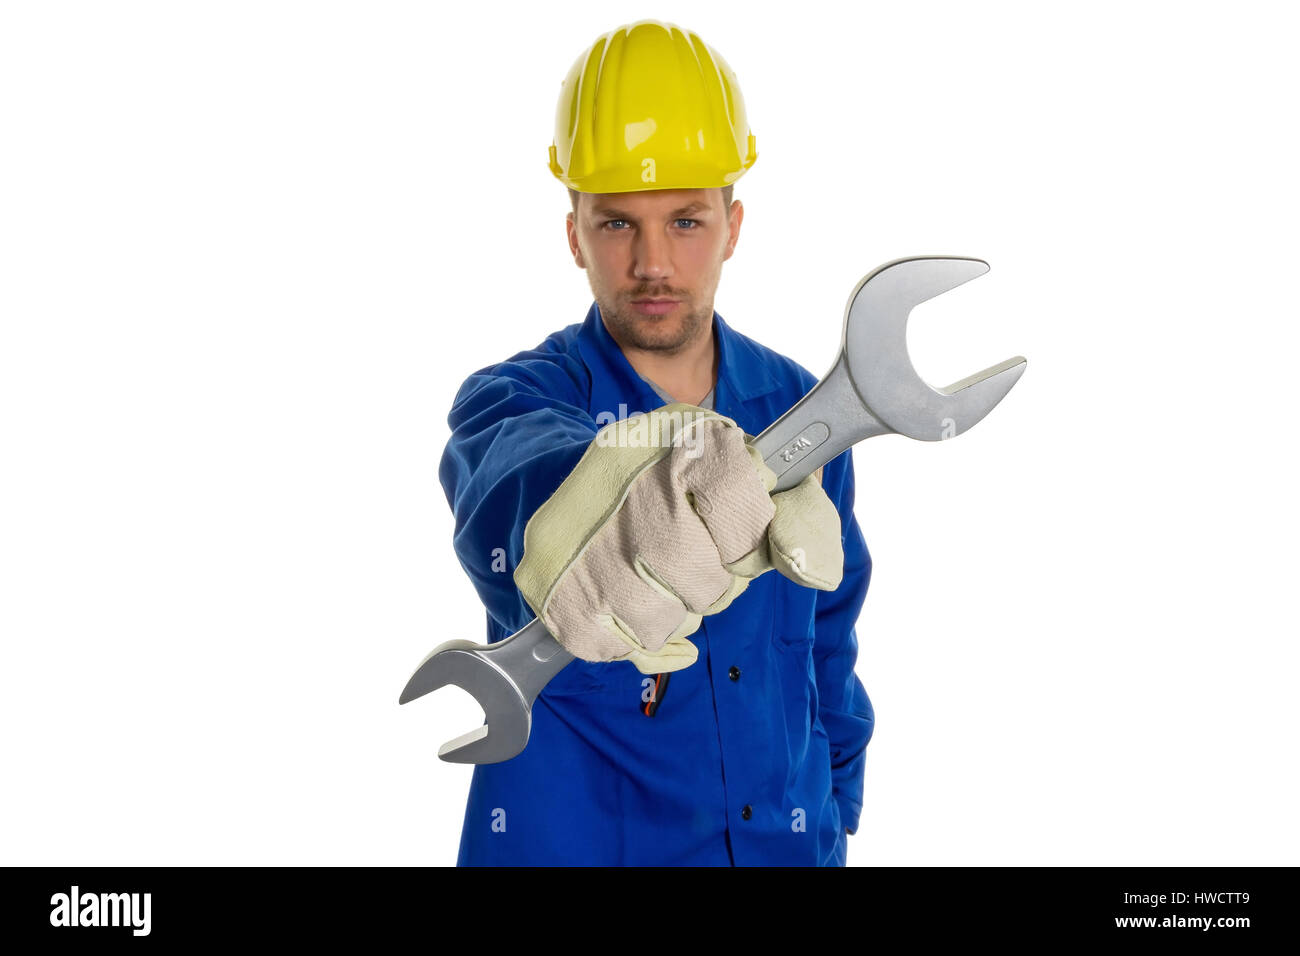 Un travailleur dans une entreprise industrielle (artisan) avec des outils dans la main, Ein Arbeiter in einem ( Gewerbebetrieb Handwerker ) mit Werkzeug in der Hand Banque D'Images